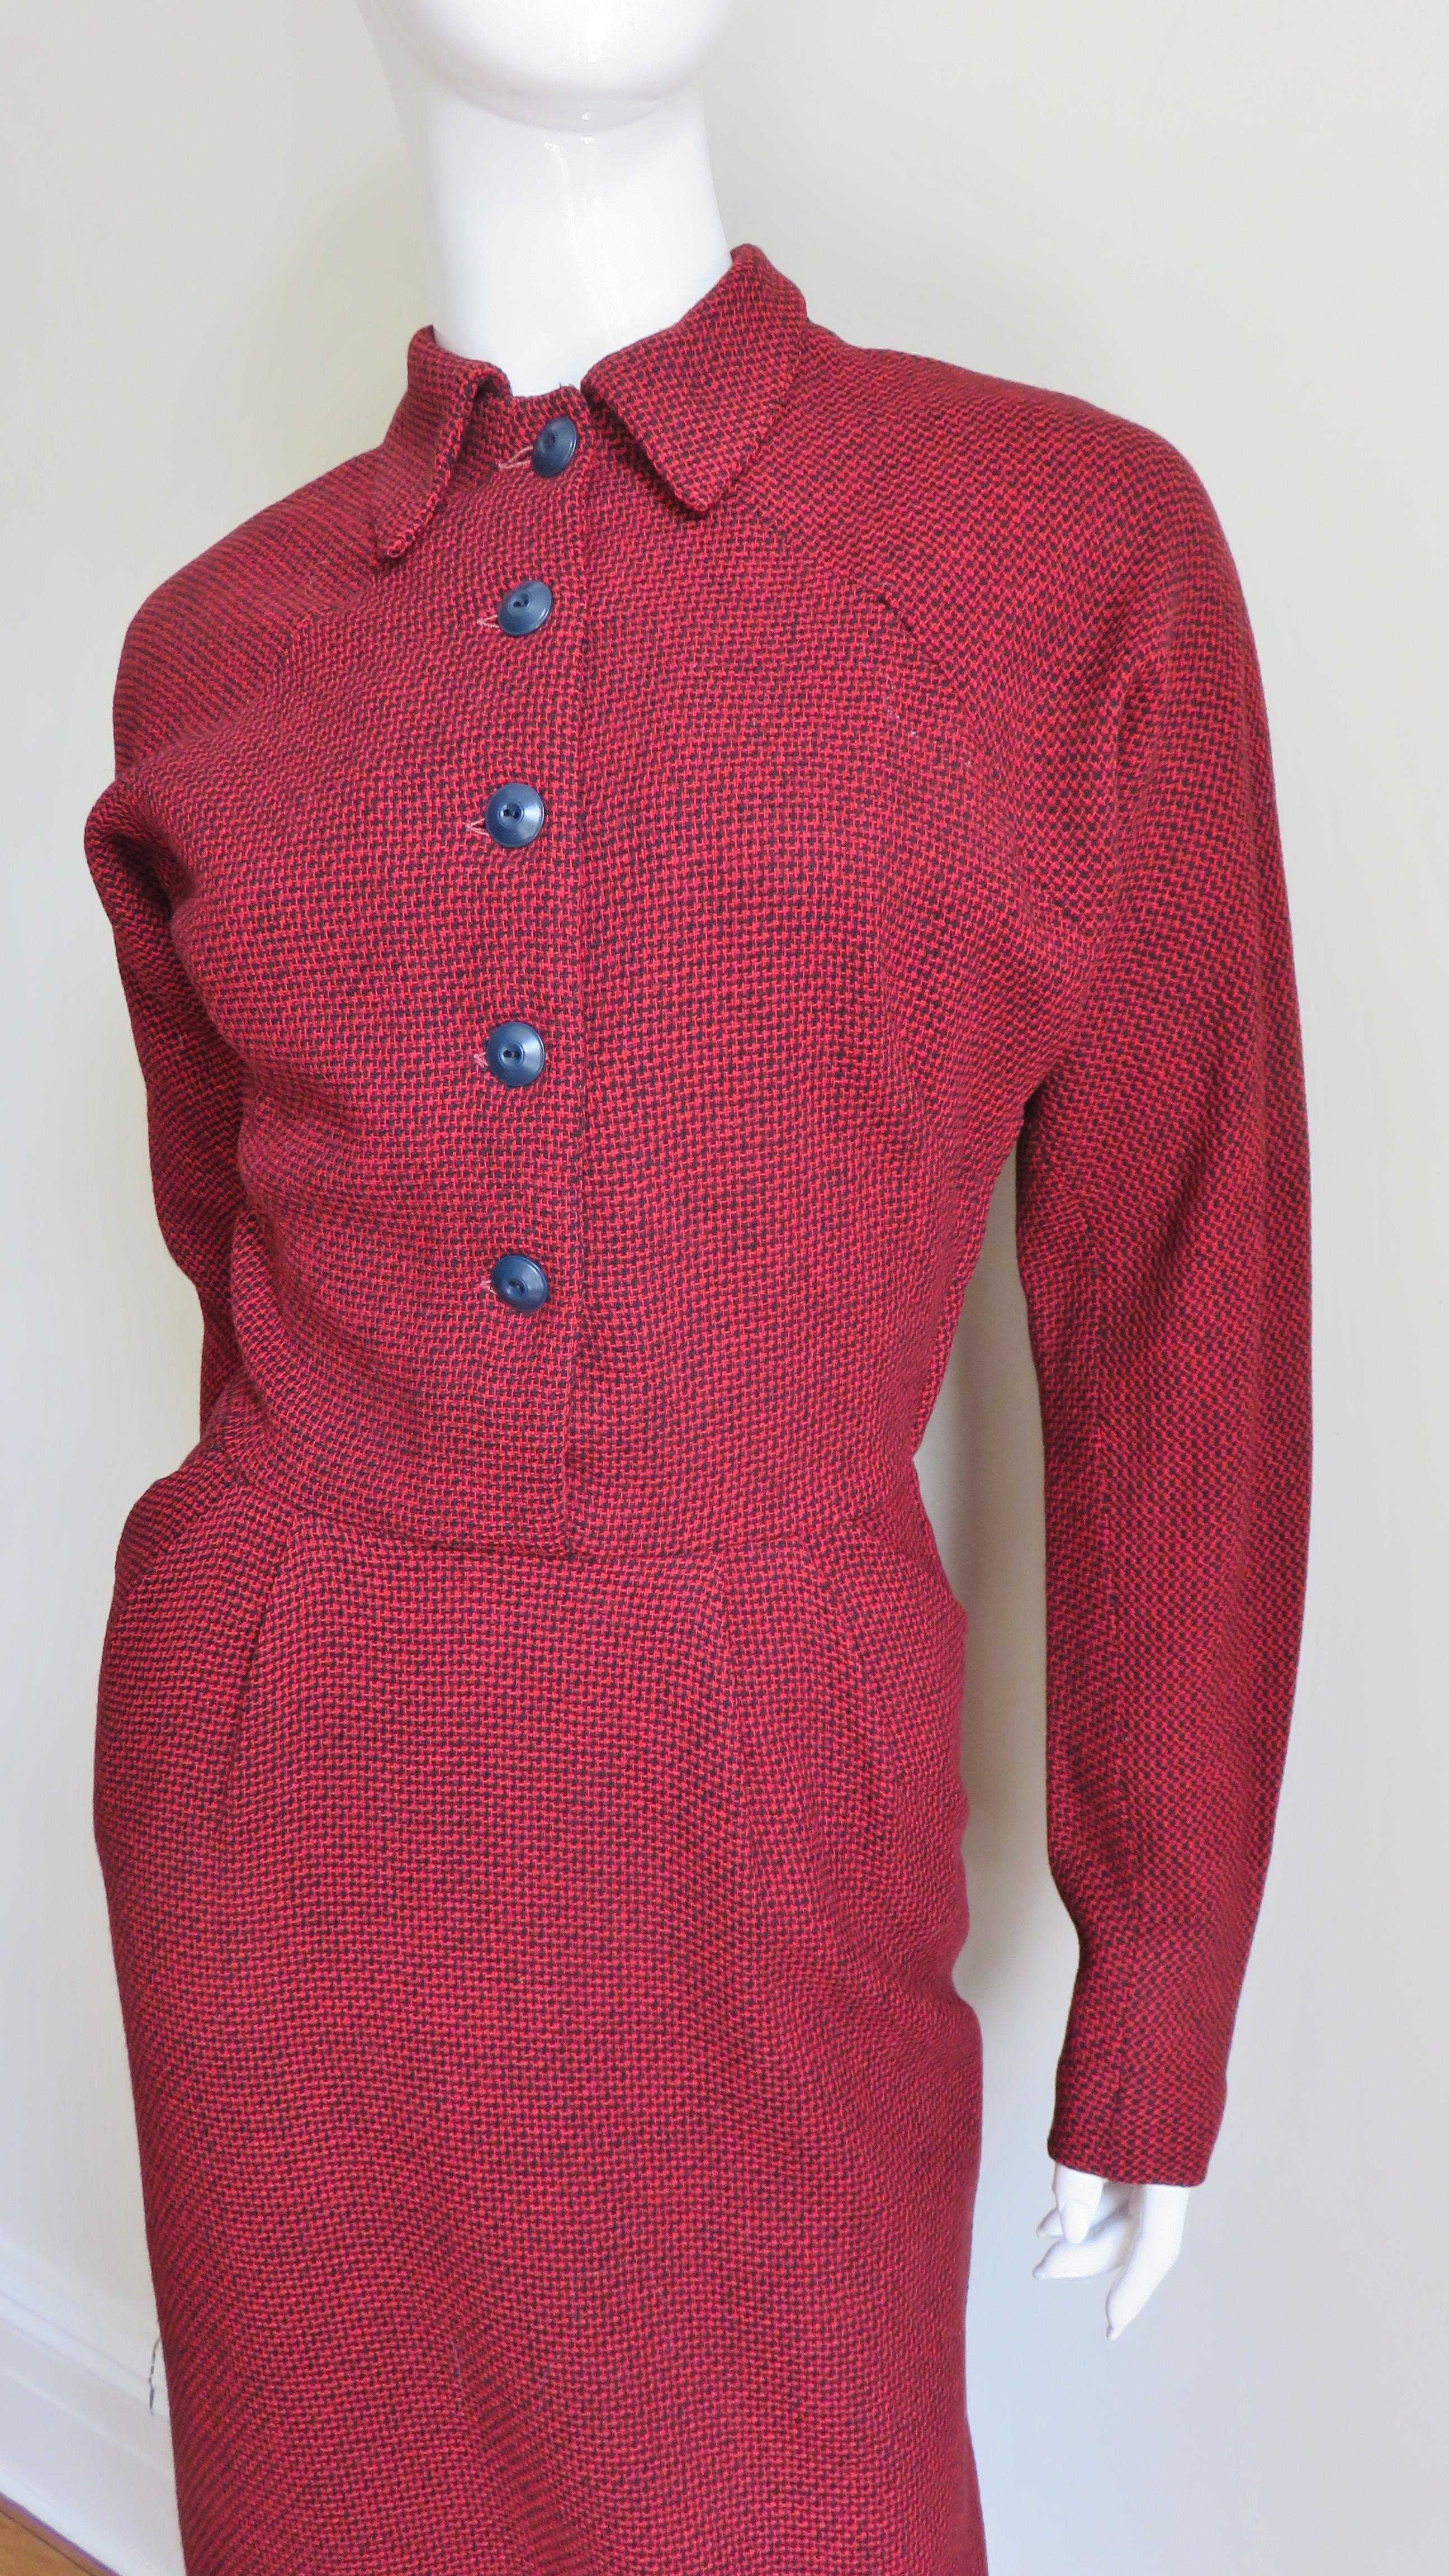 Women's 1950s Dress with Detachable Cape